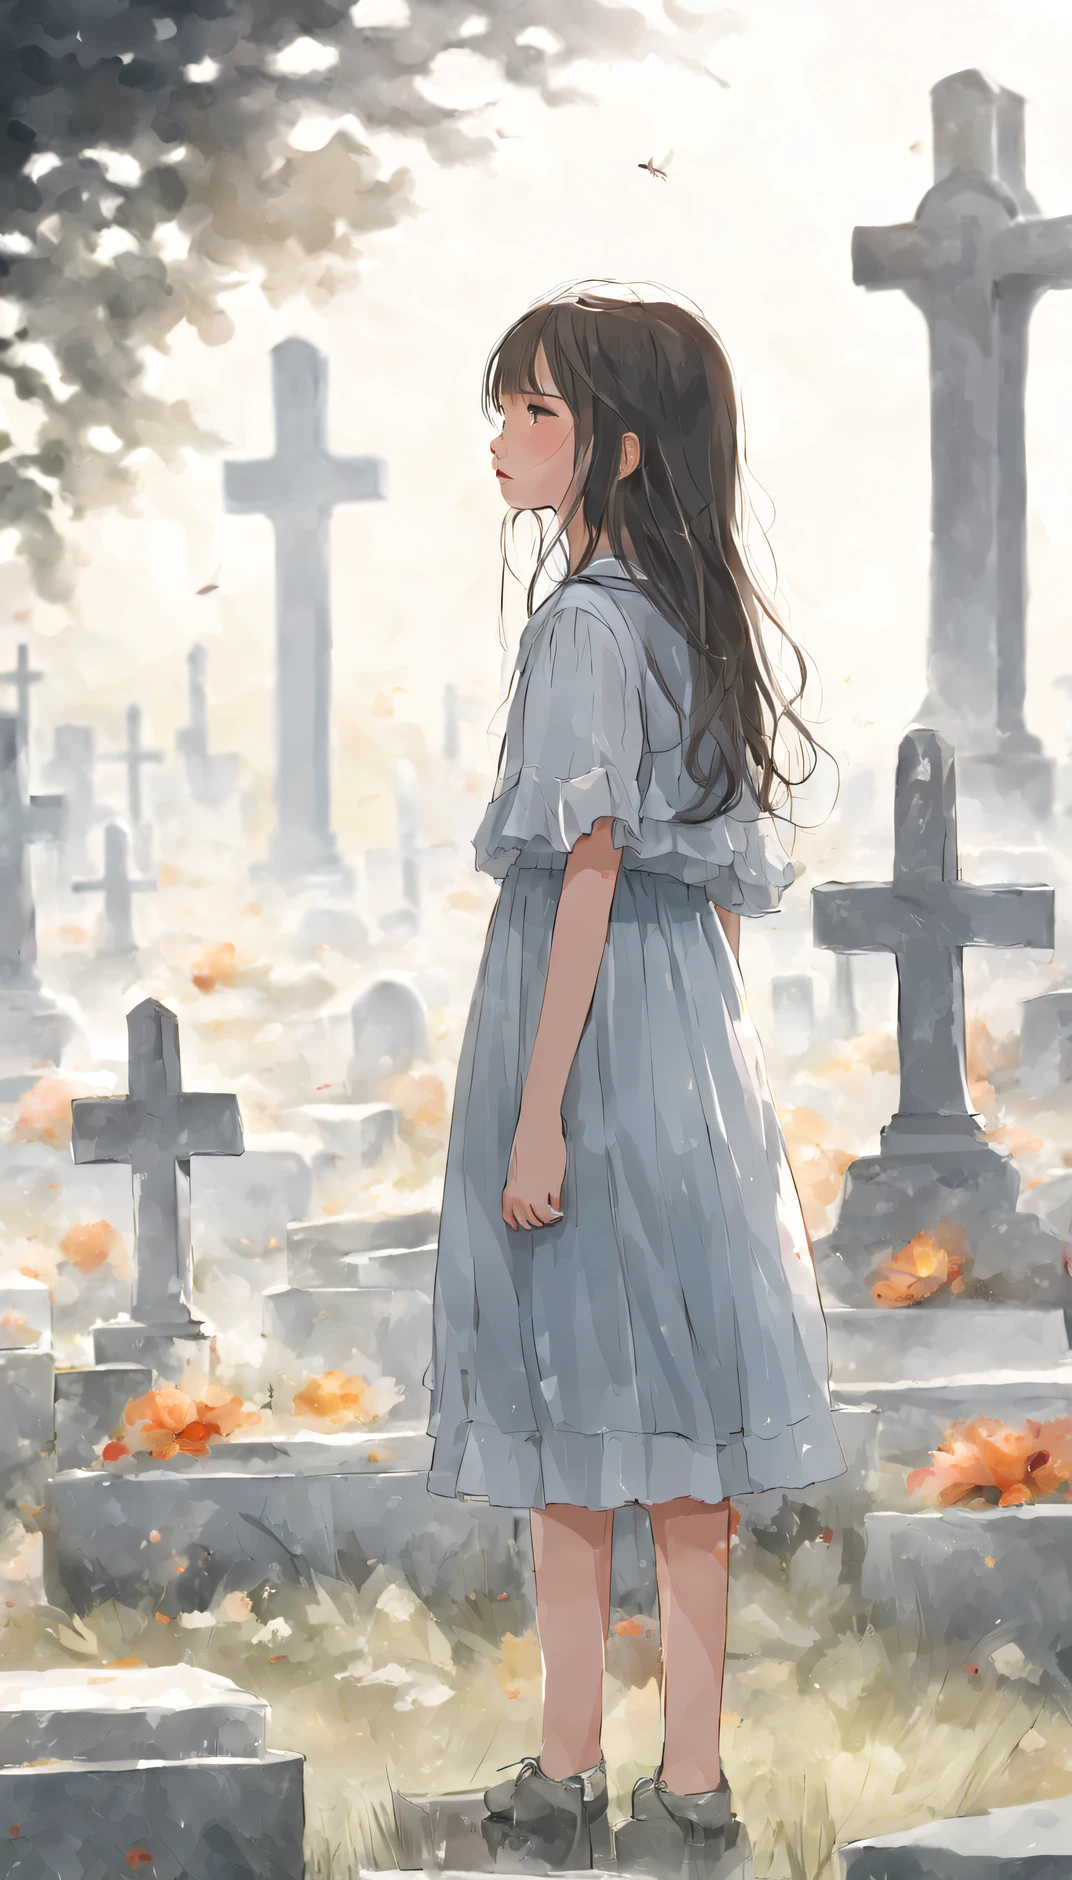 (Niñas adolescentes), (pequeña), Una niña parada frente a una tumba y llorando., Es una belleza impresionante que te hace sentir el pulso de la vida..,